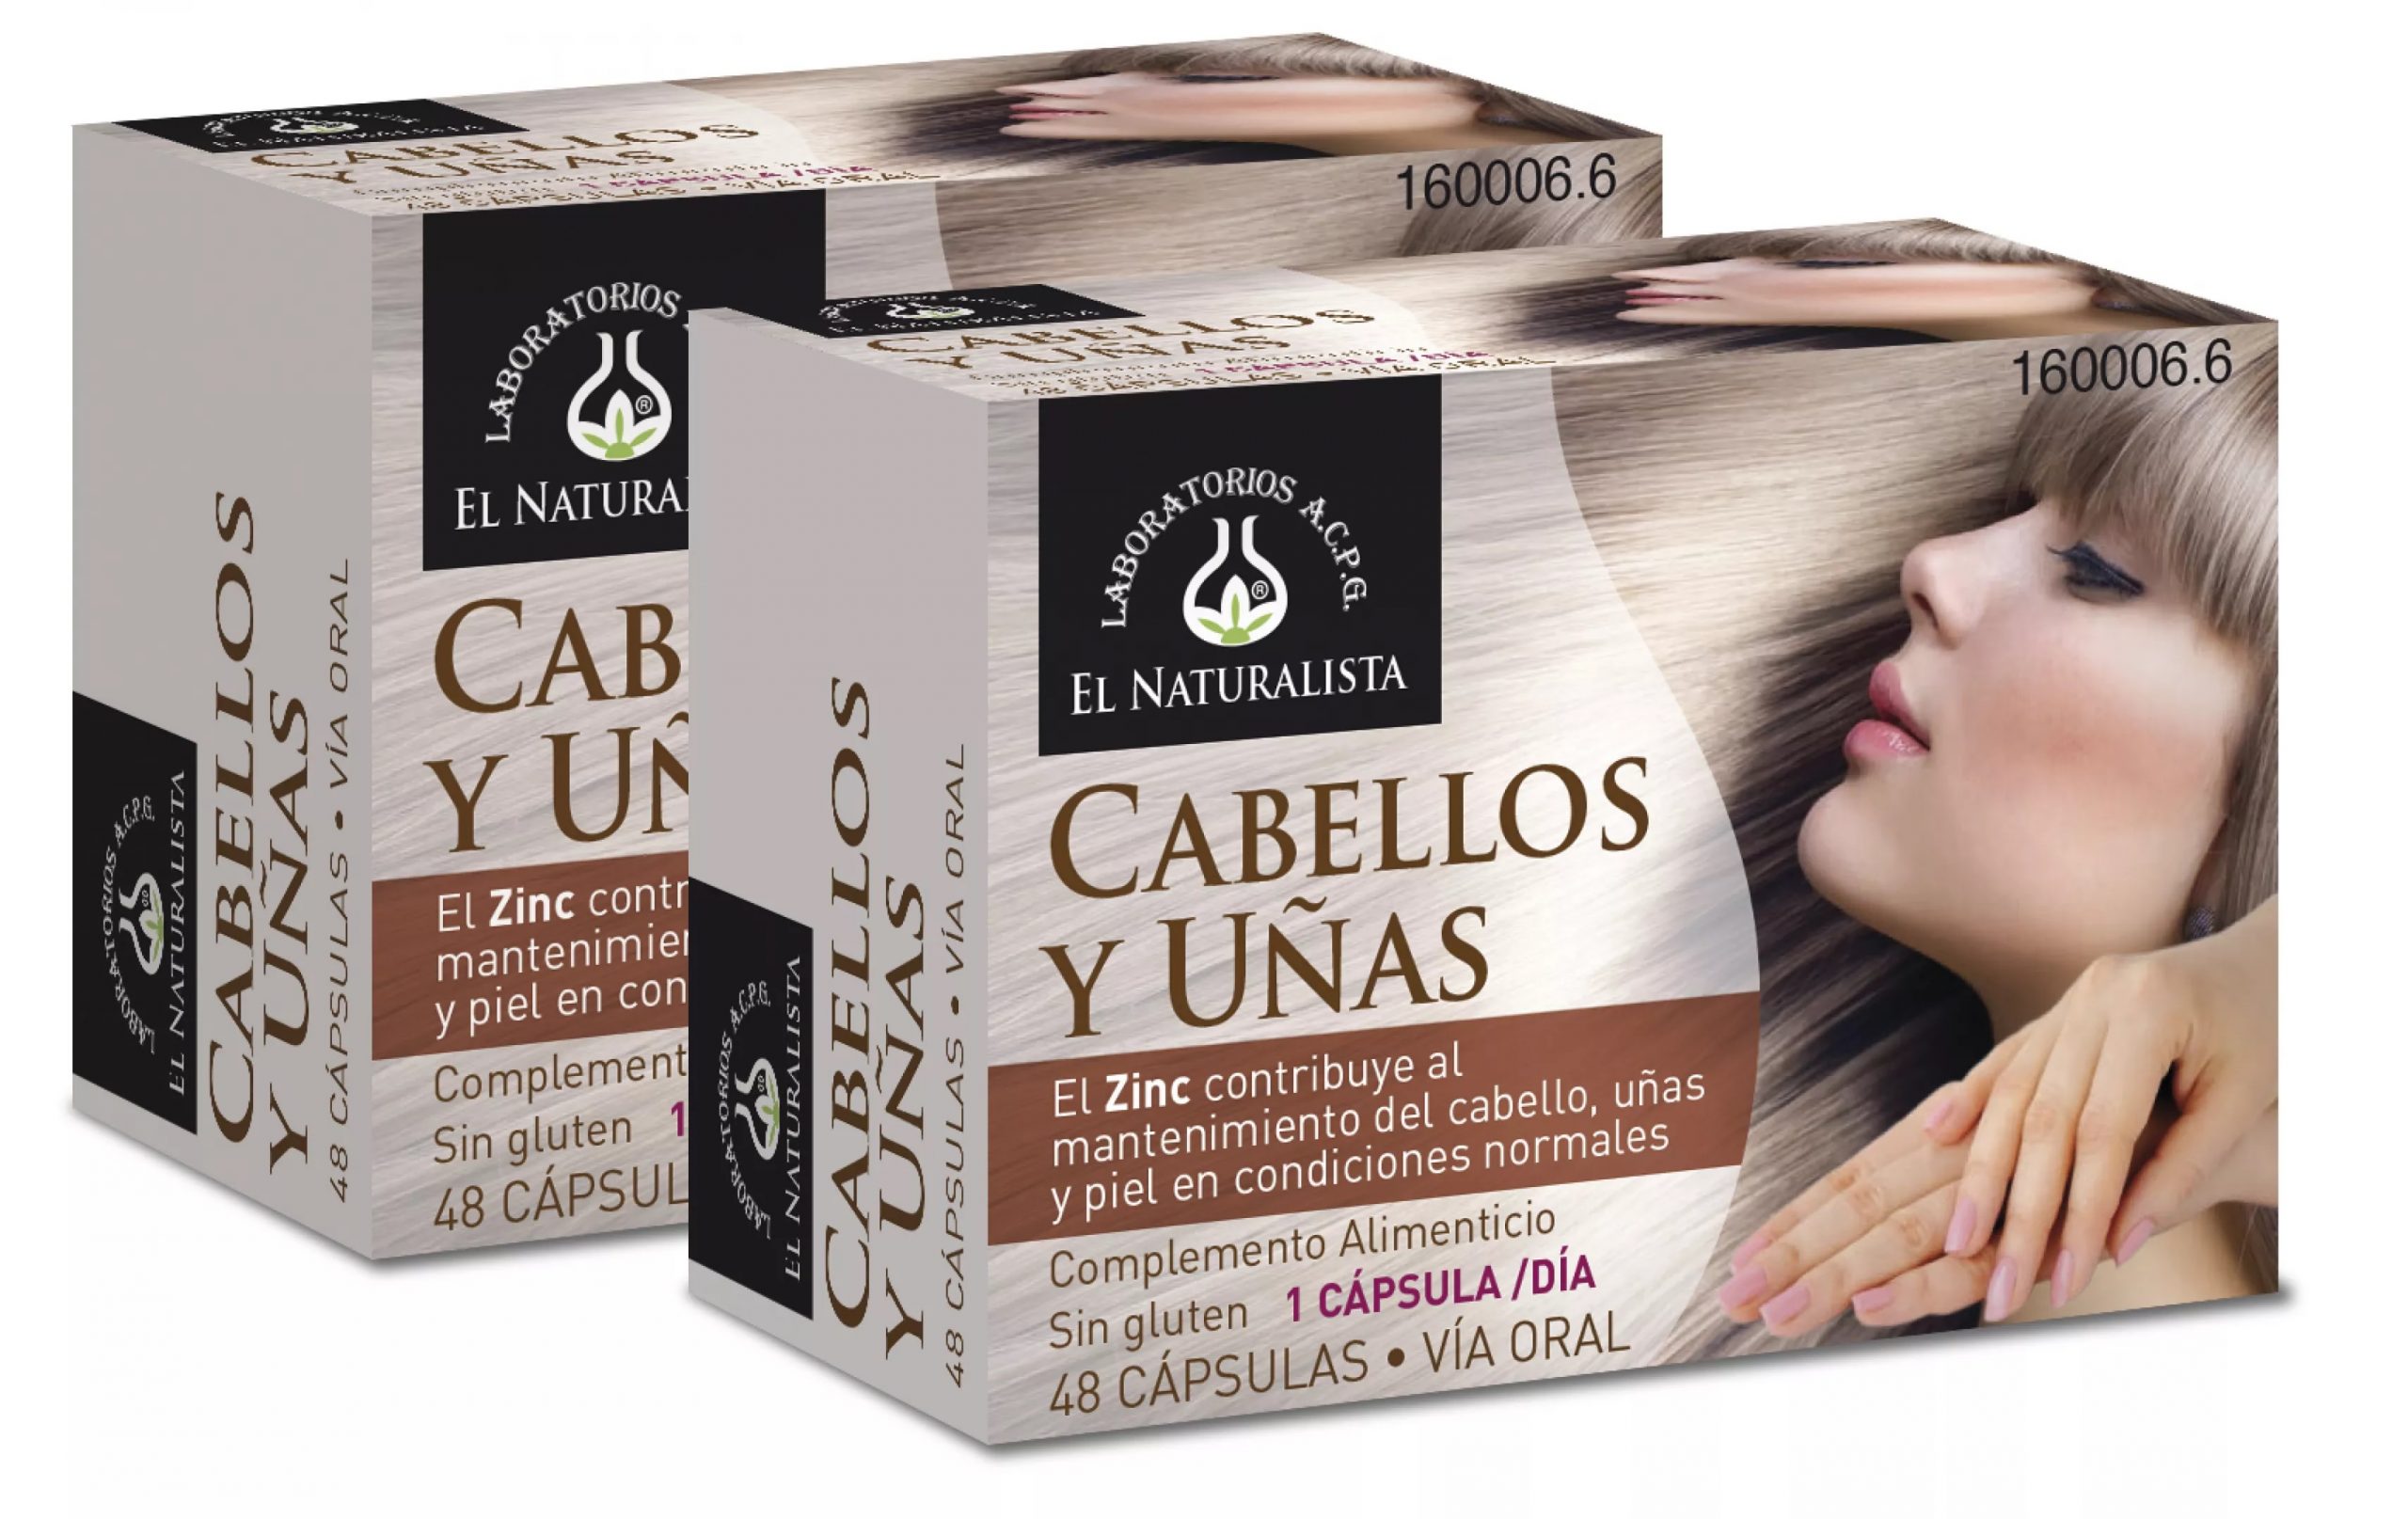 Cabello y uñas El Naturalista Pack 2 und